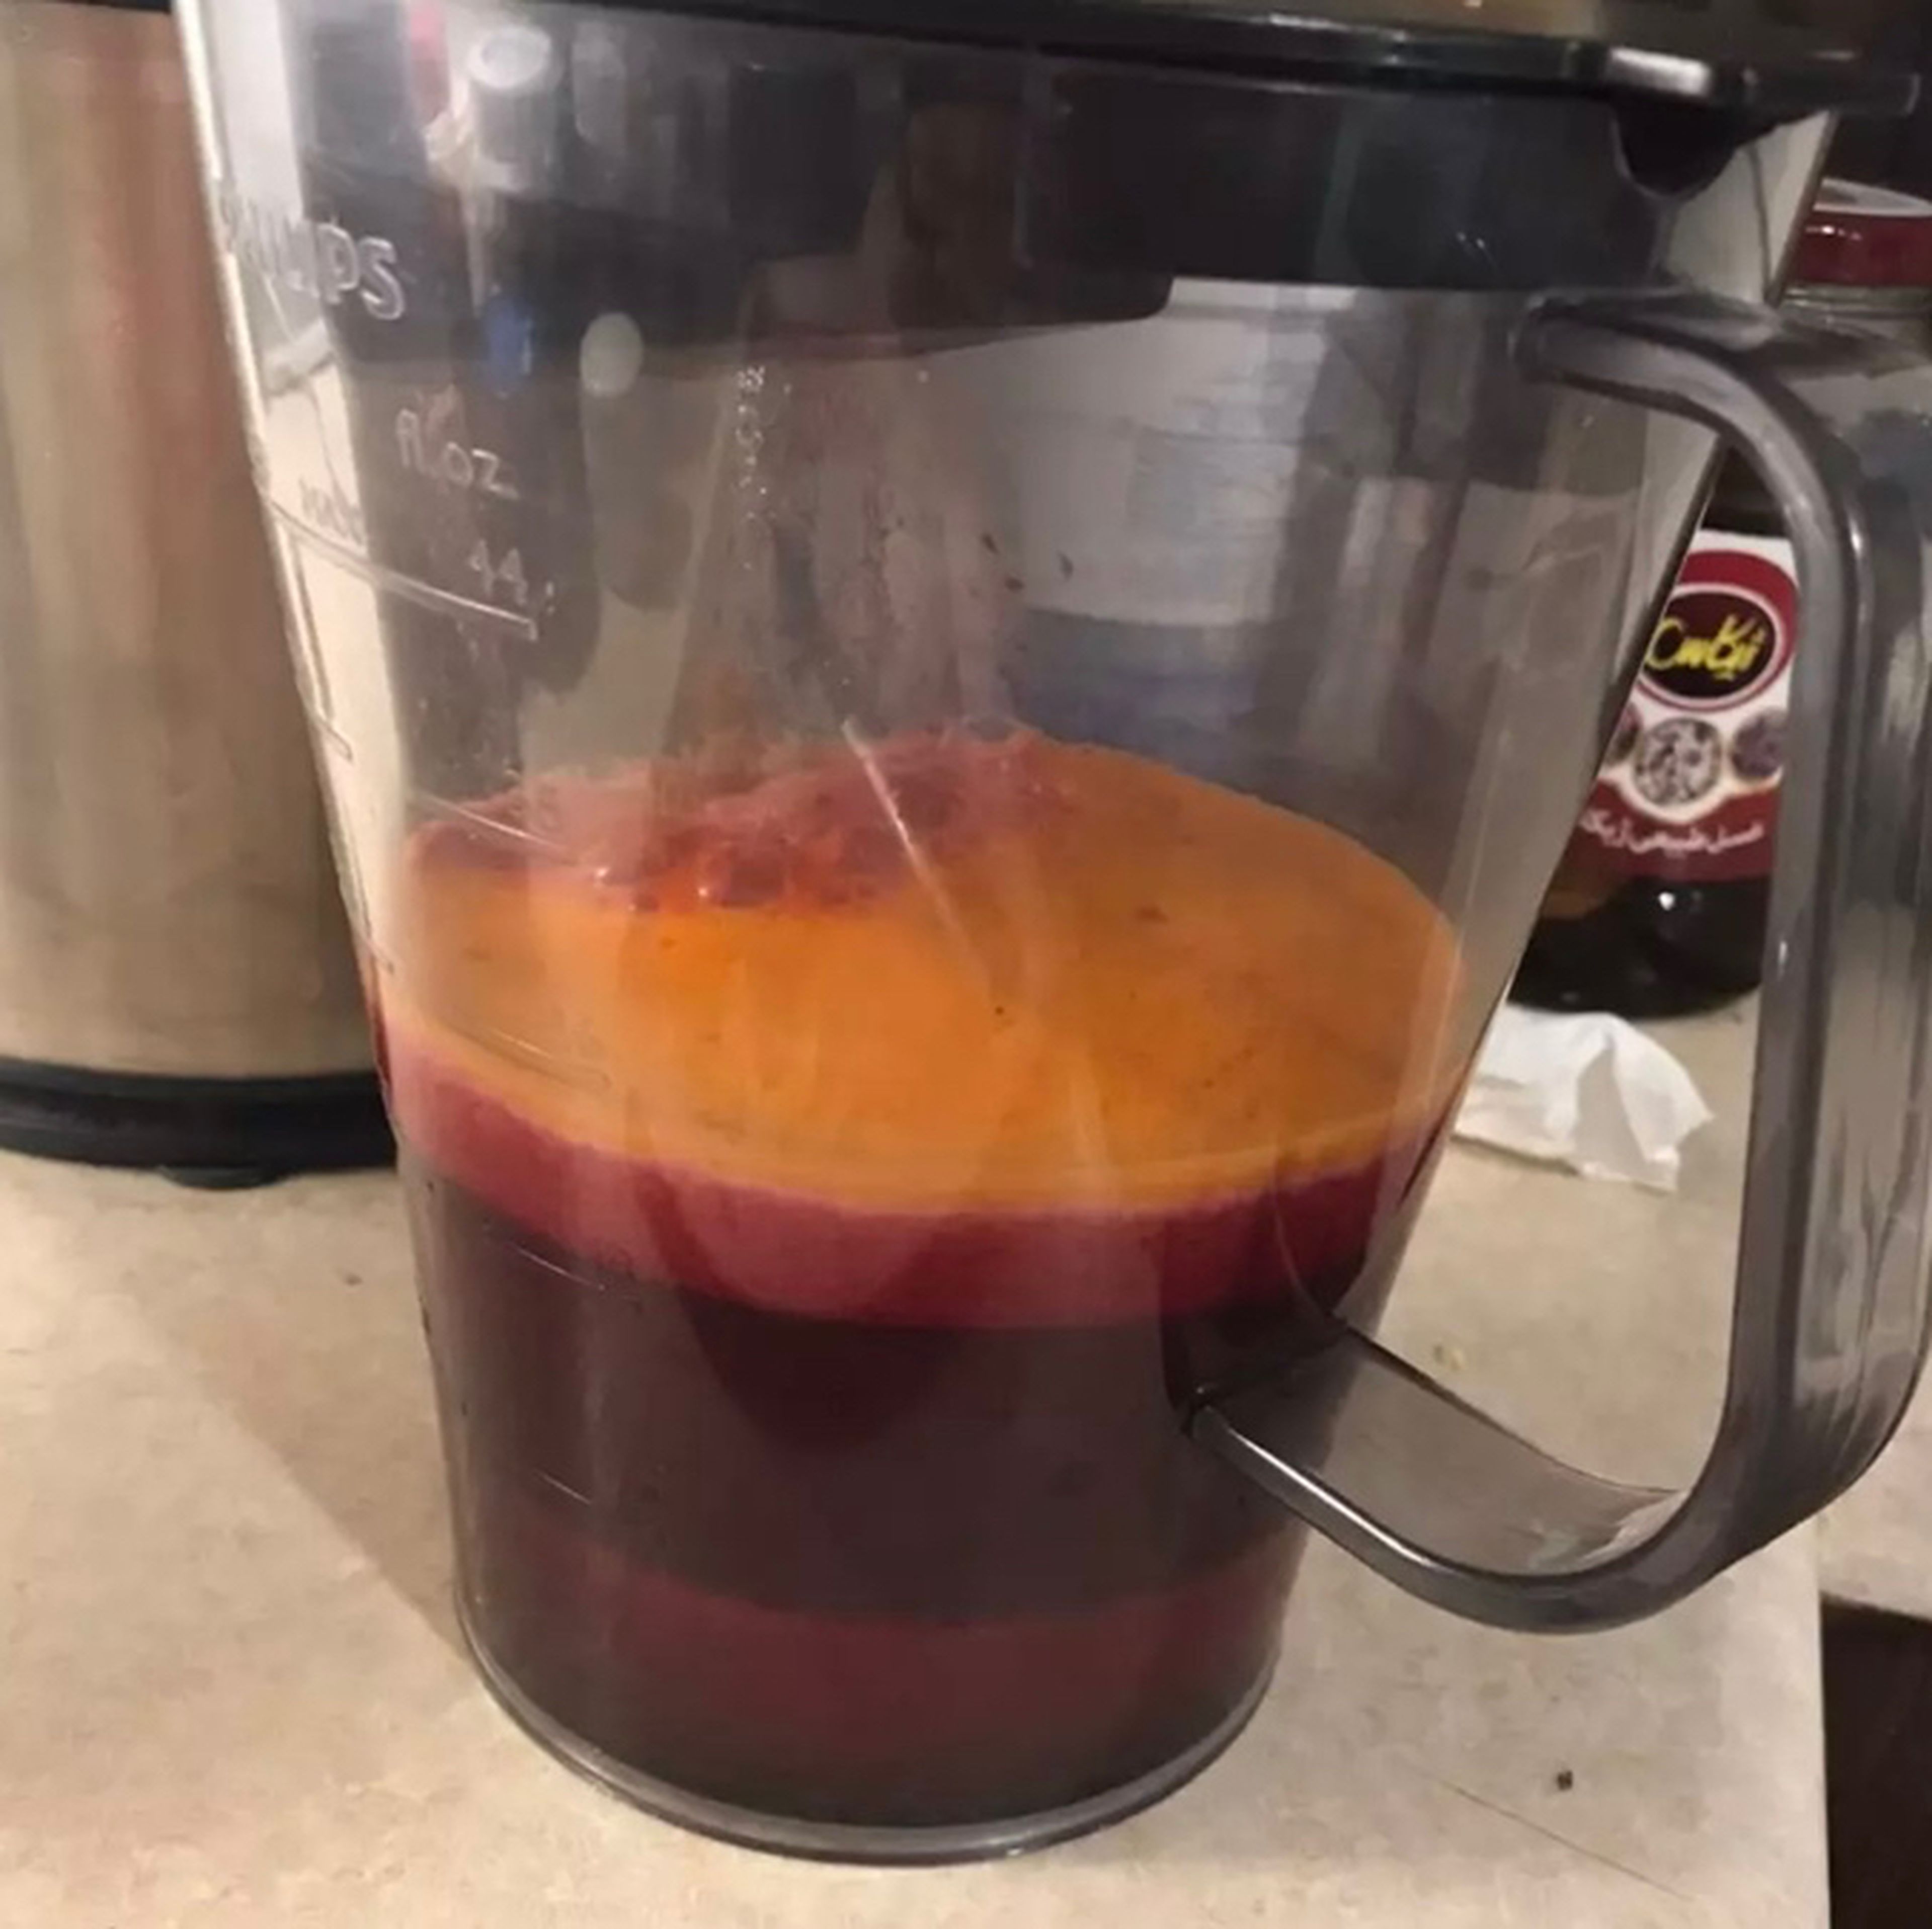 Stir the juice a bit . Ready!